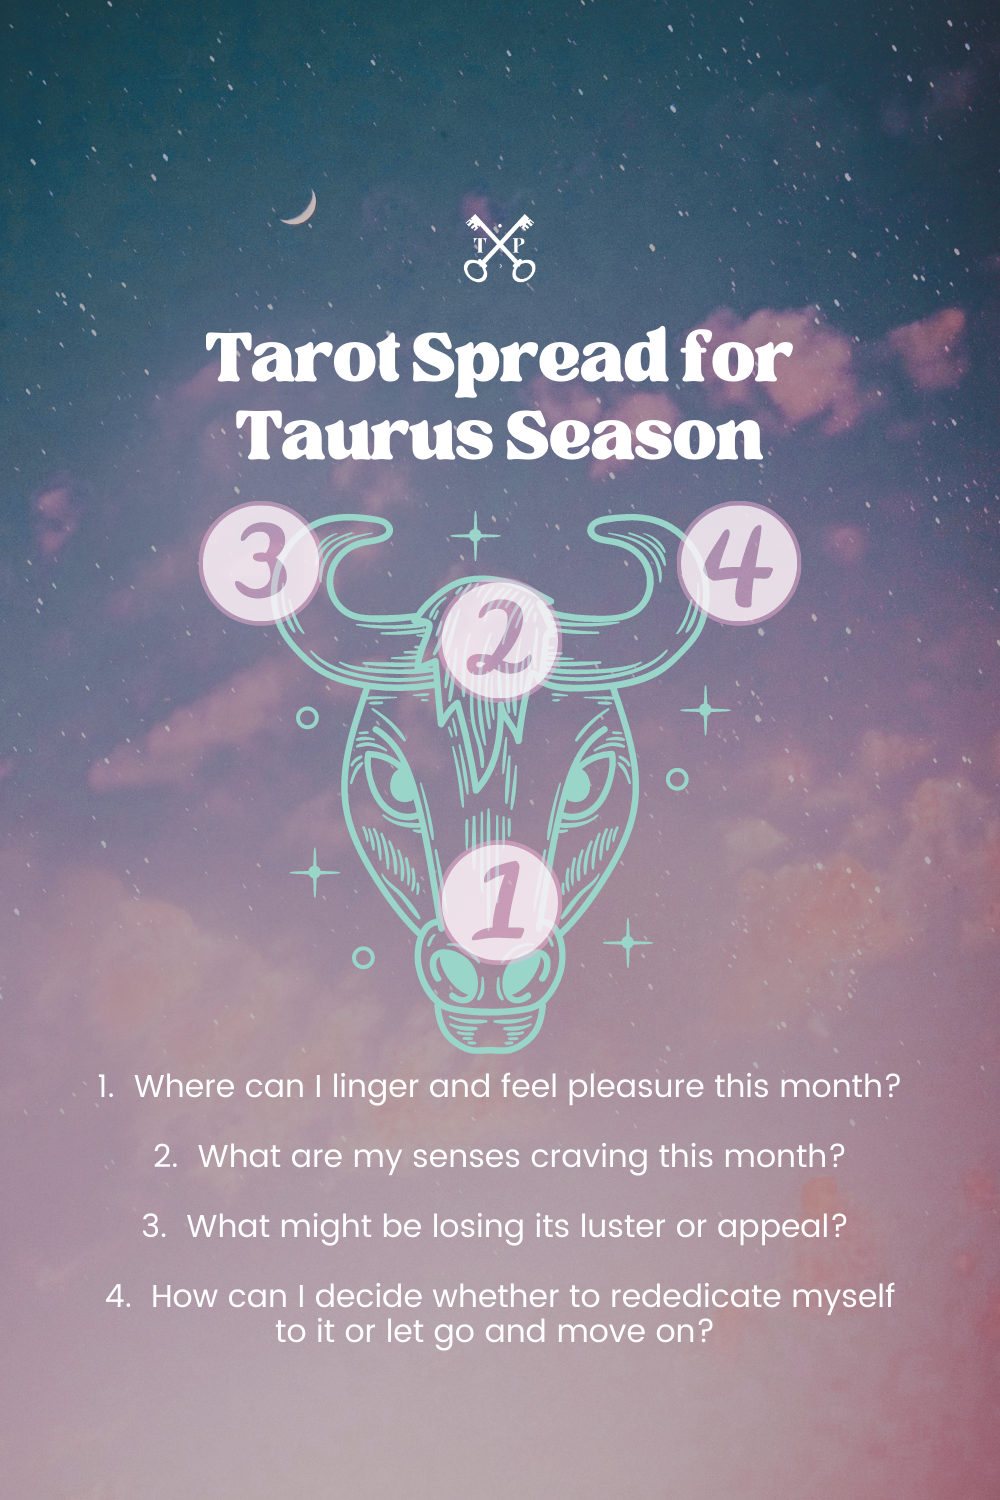 Tarot Spread for Taurus Season | The Tarot Professor